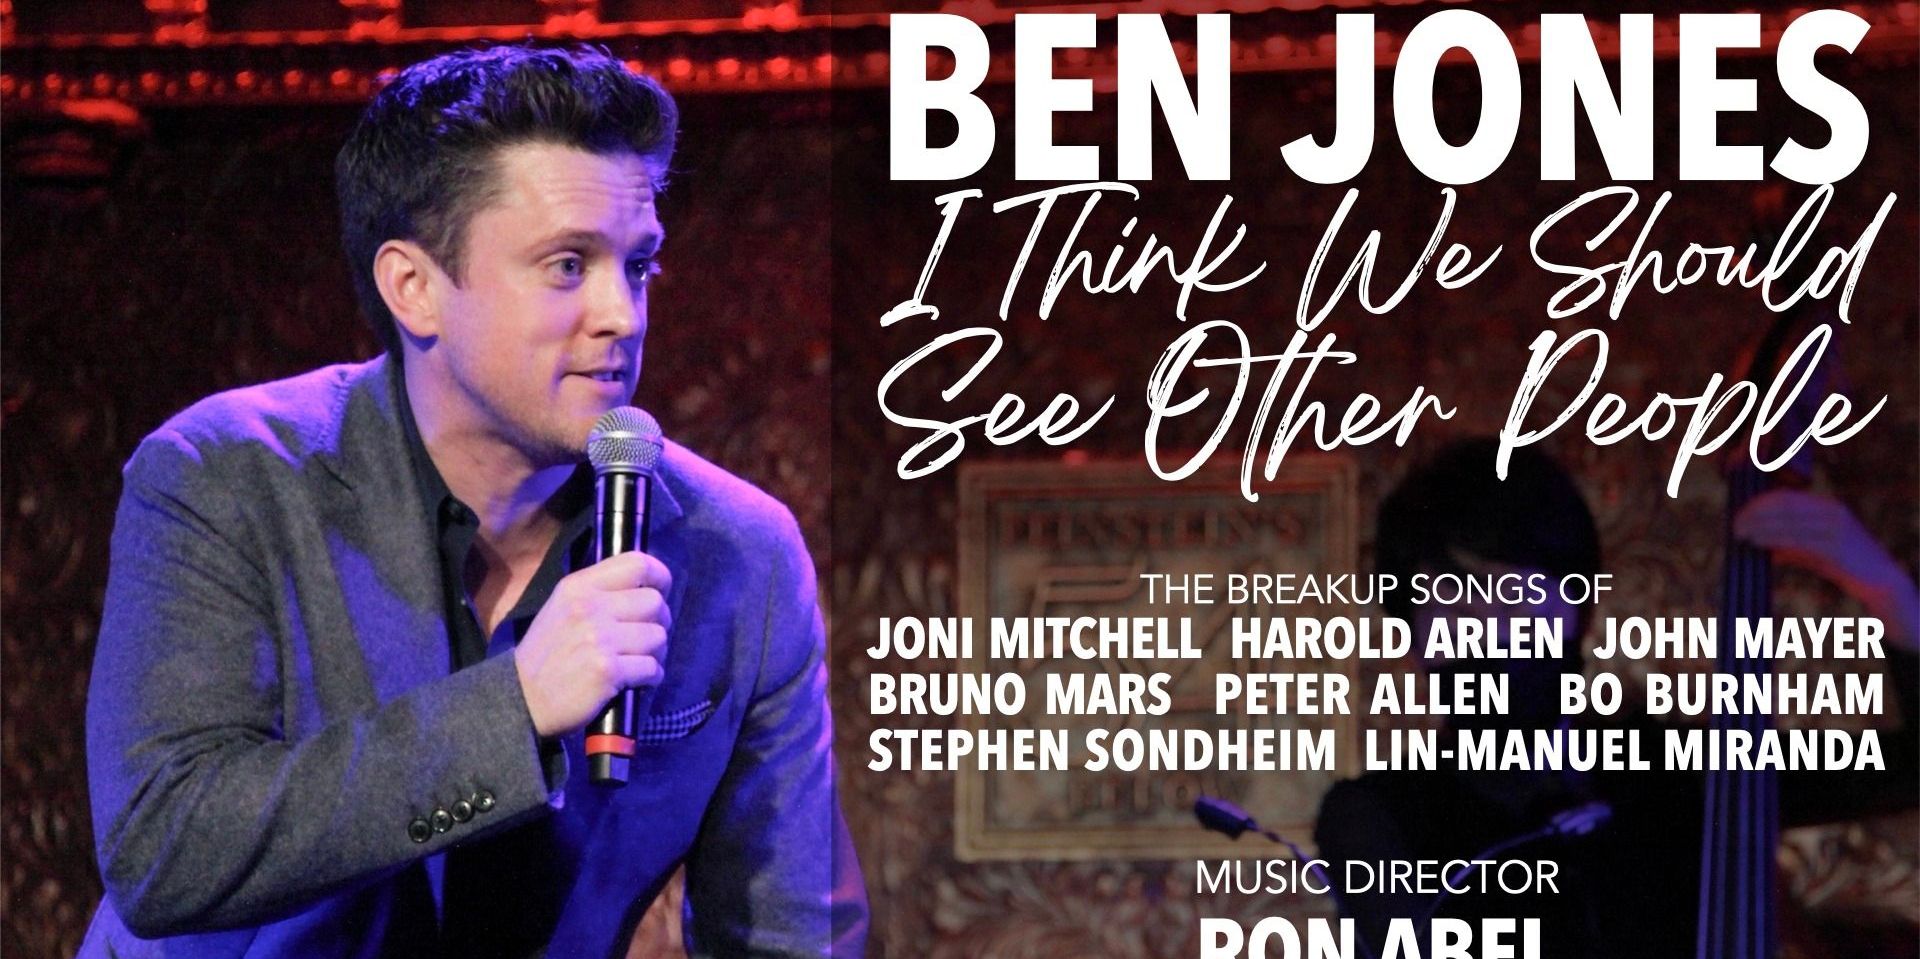 Ben Jones promotional image